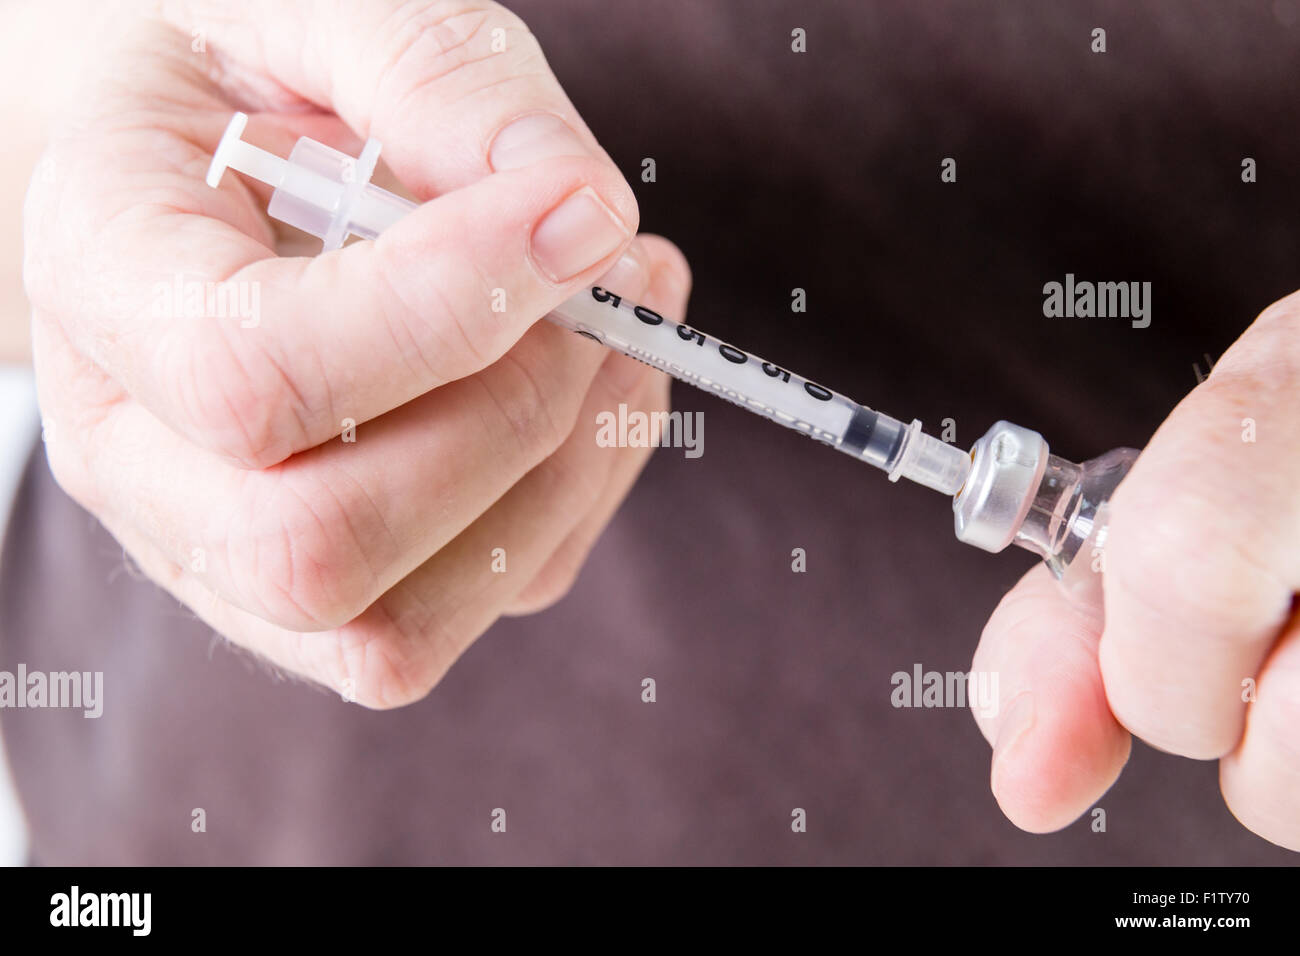 Zeichnen Insulin aus Fläschchen mit Spritze Stockfotografie - Alamy